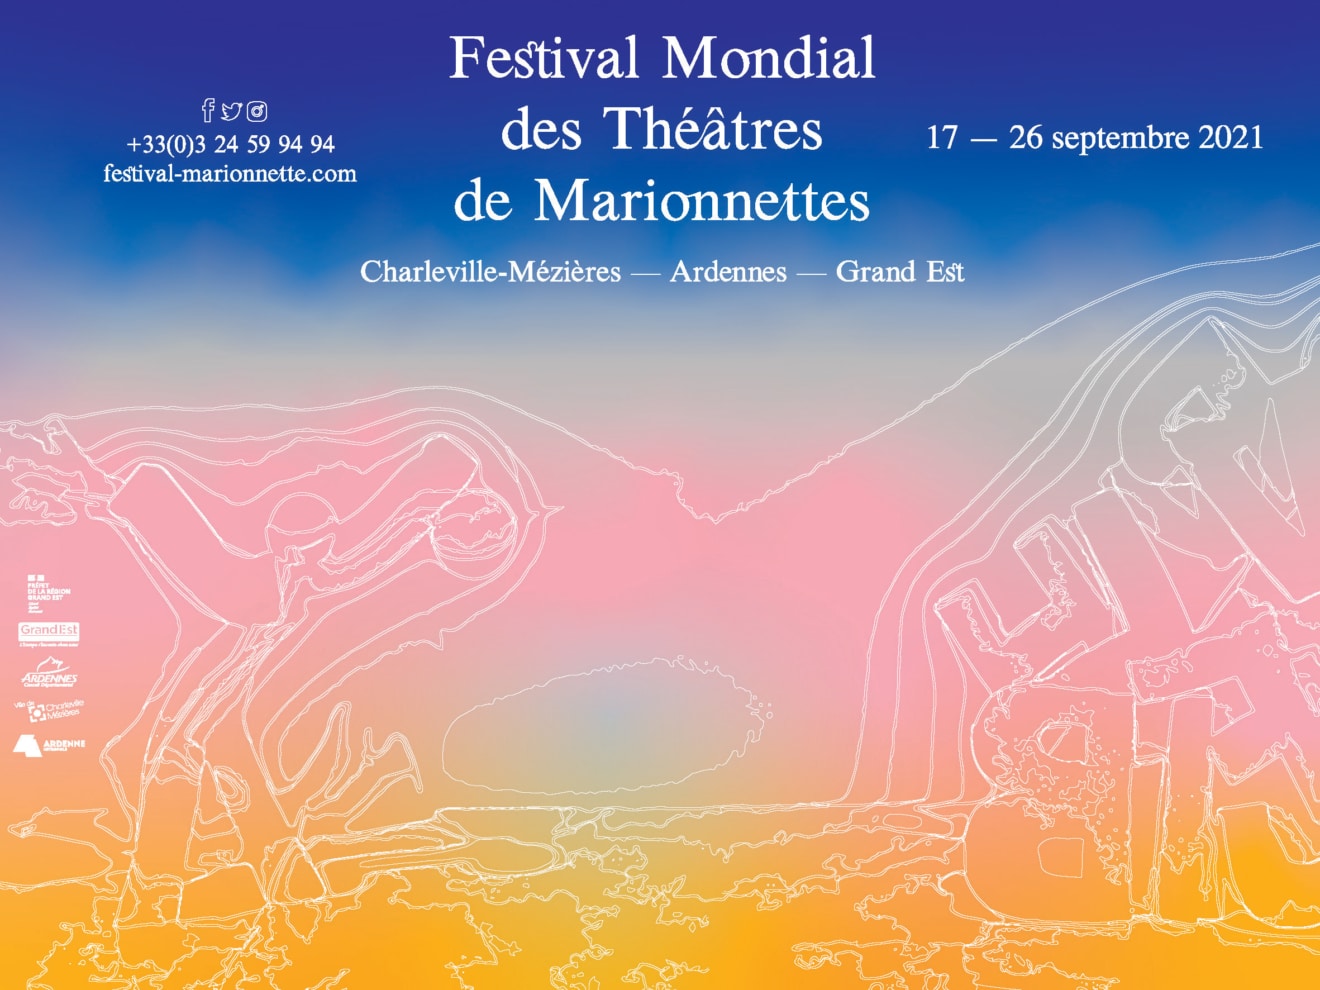 Le Festival Mondial des Théâtres de Marionnettes de Charleville-Mézières prépare son édition 2021